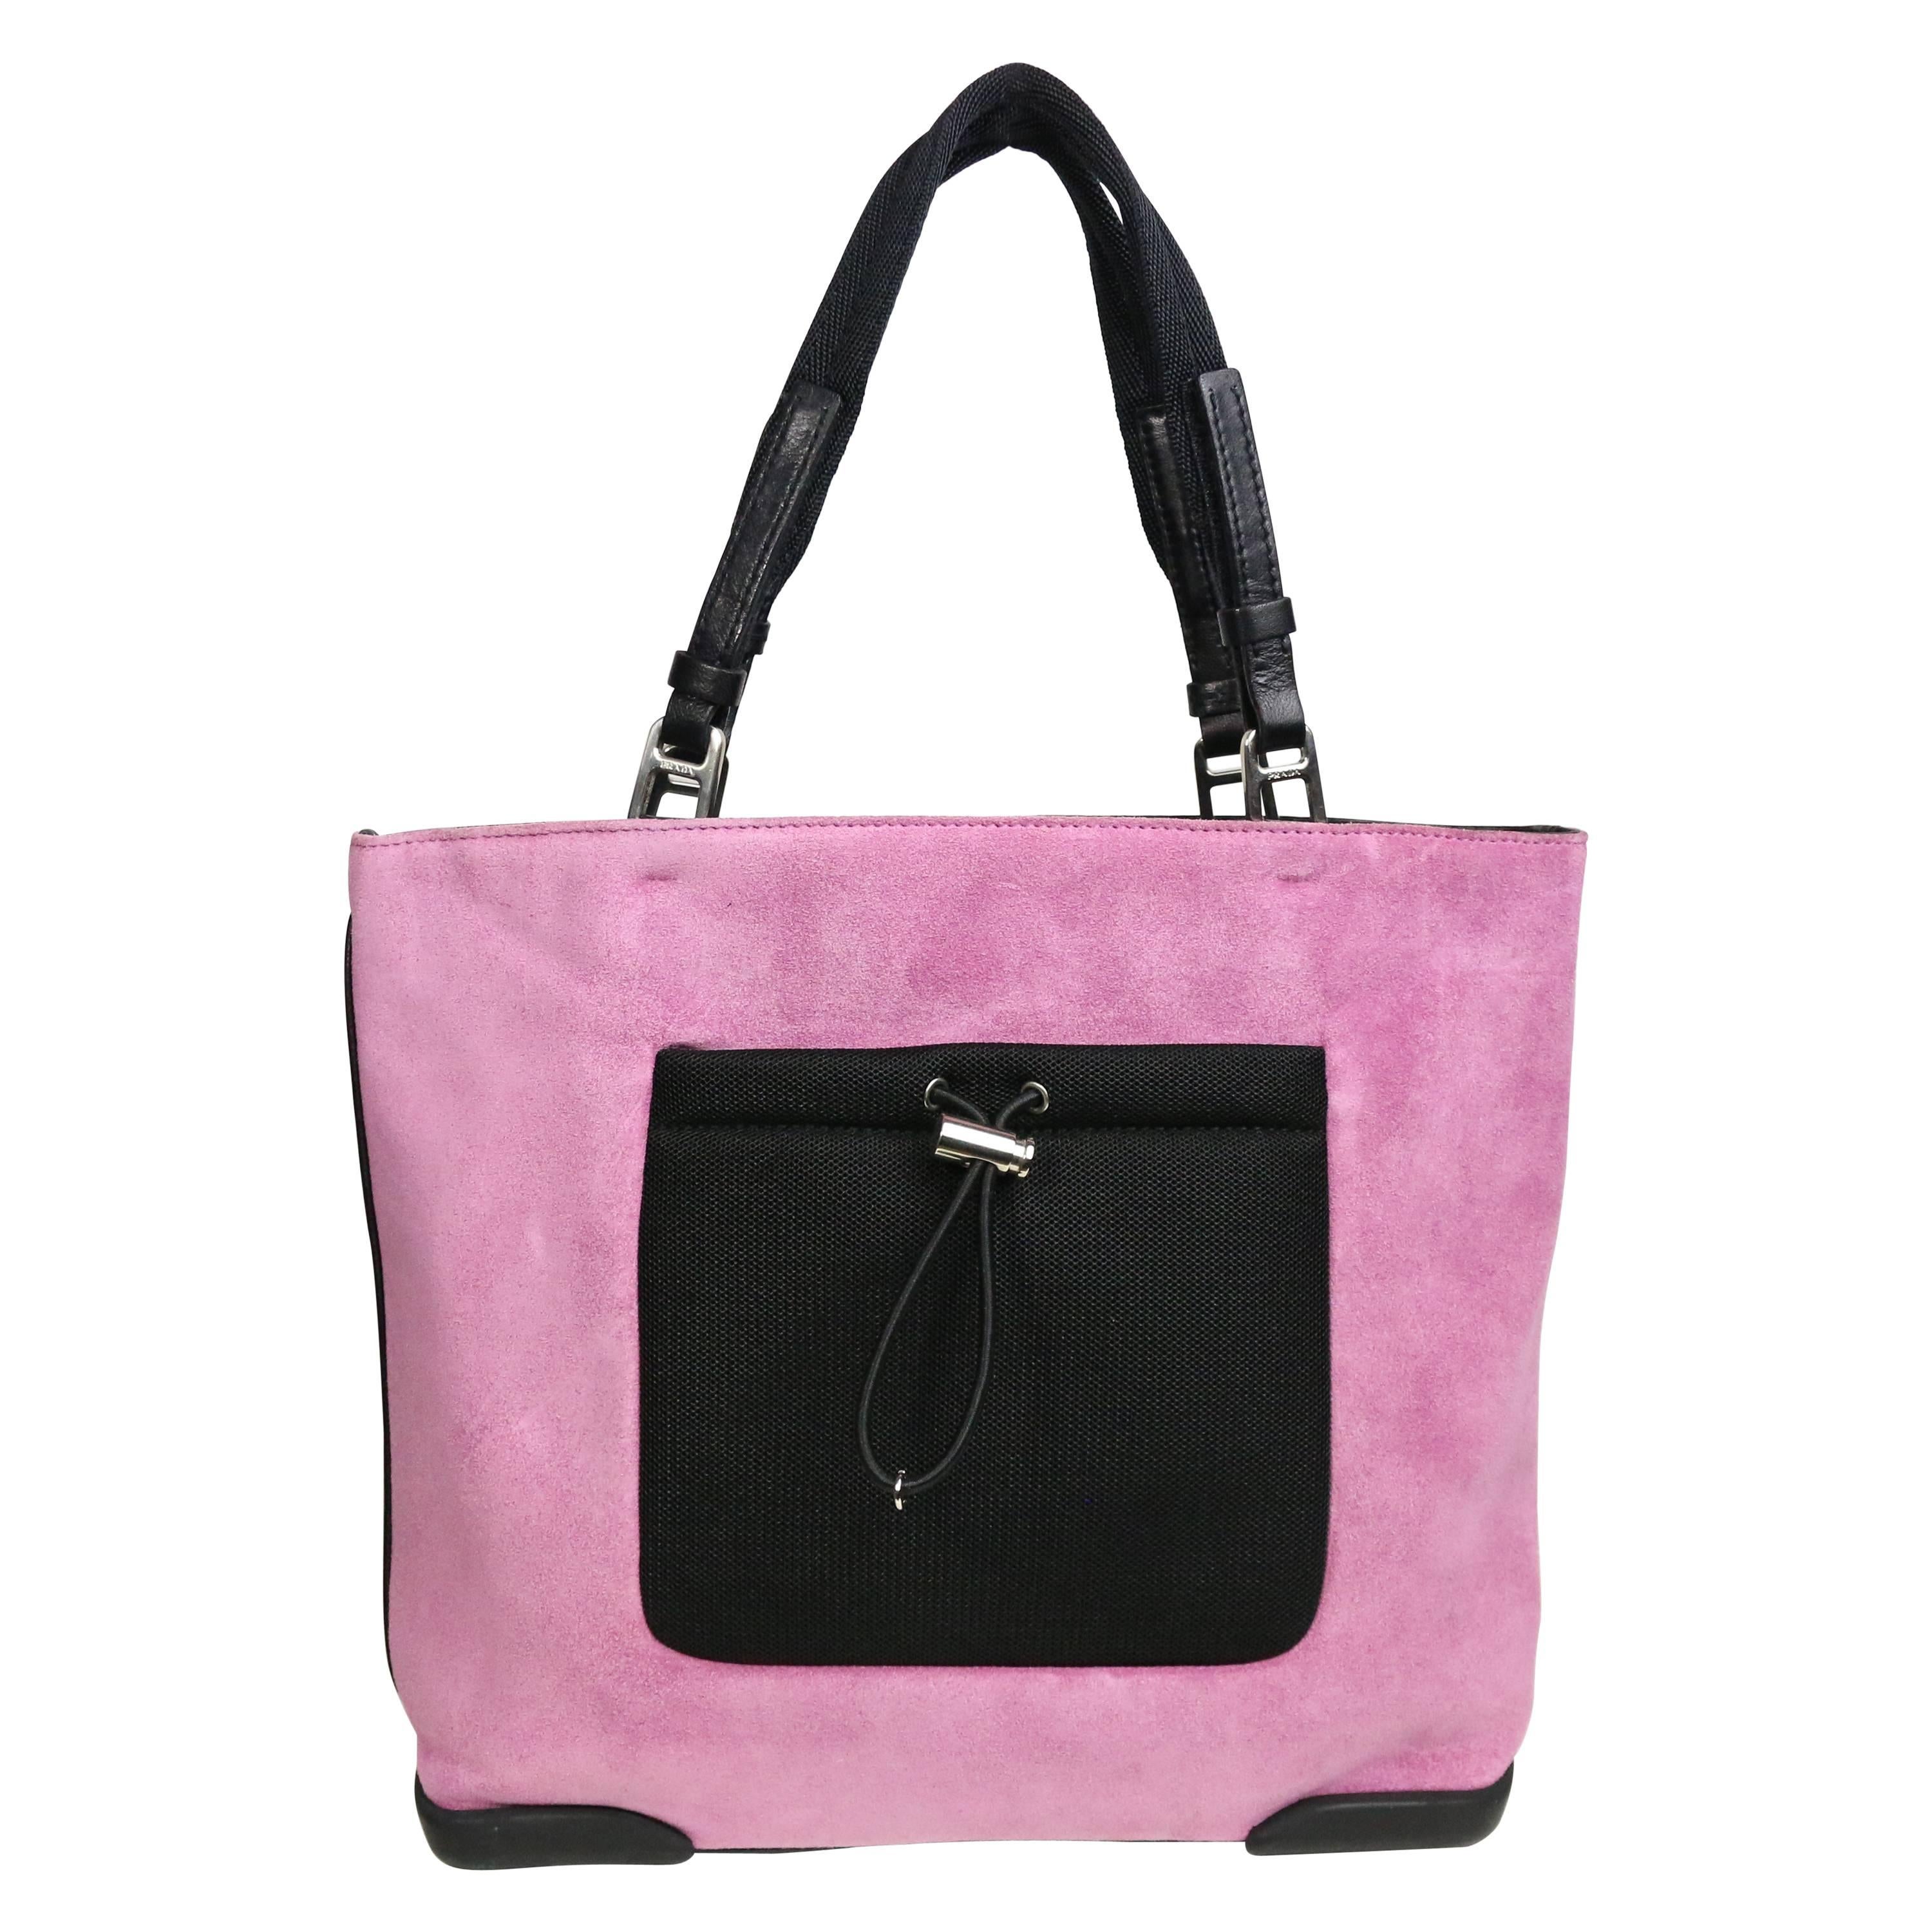 Prada Pink Suede Handbag